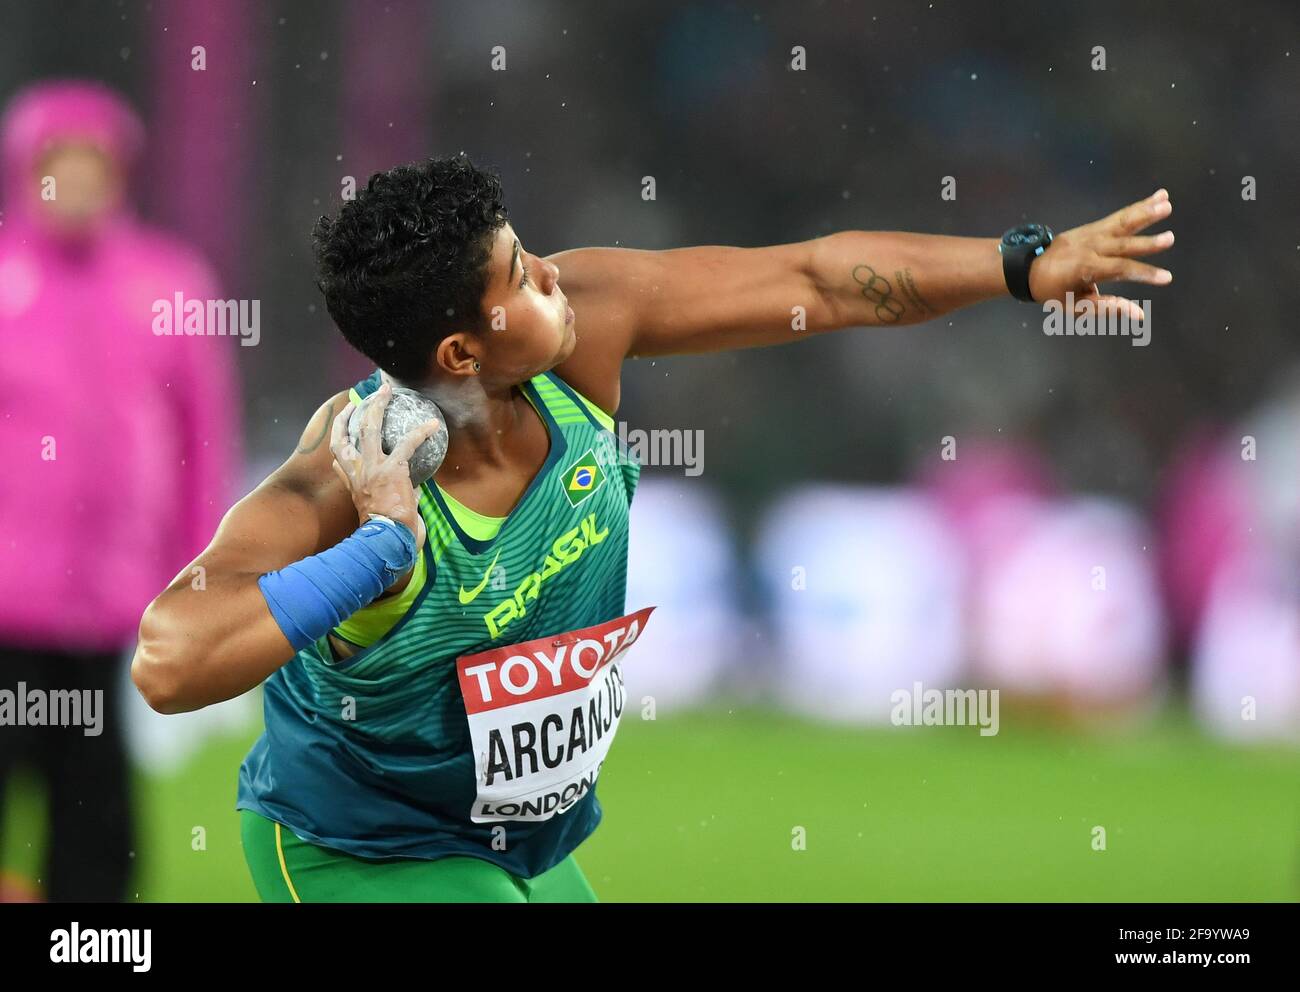 Geisa Arcanjo (Brésil). Finale de la mise de balle pour les femmes. Championnats du monde de l'IAAF, Londres 2017 Banque D'Images